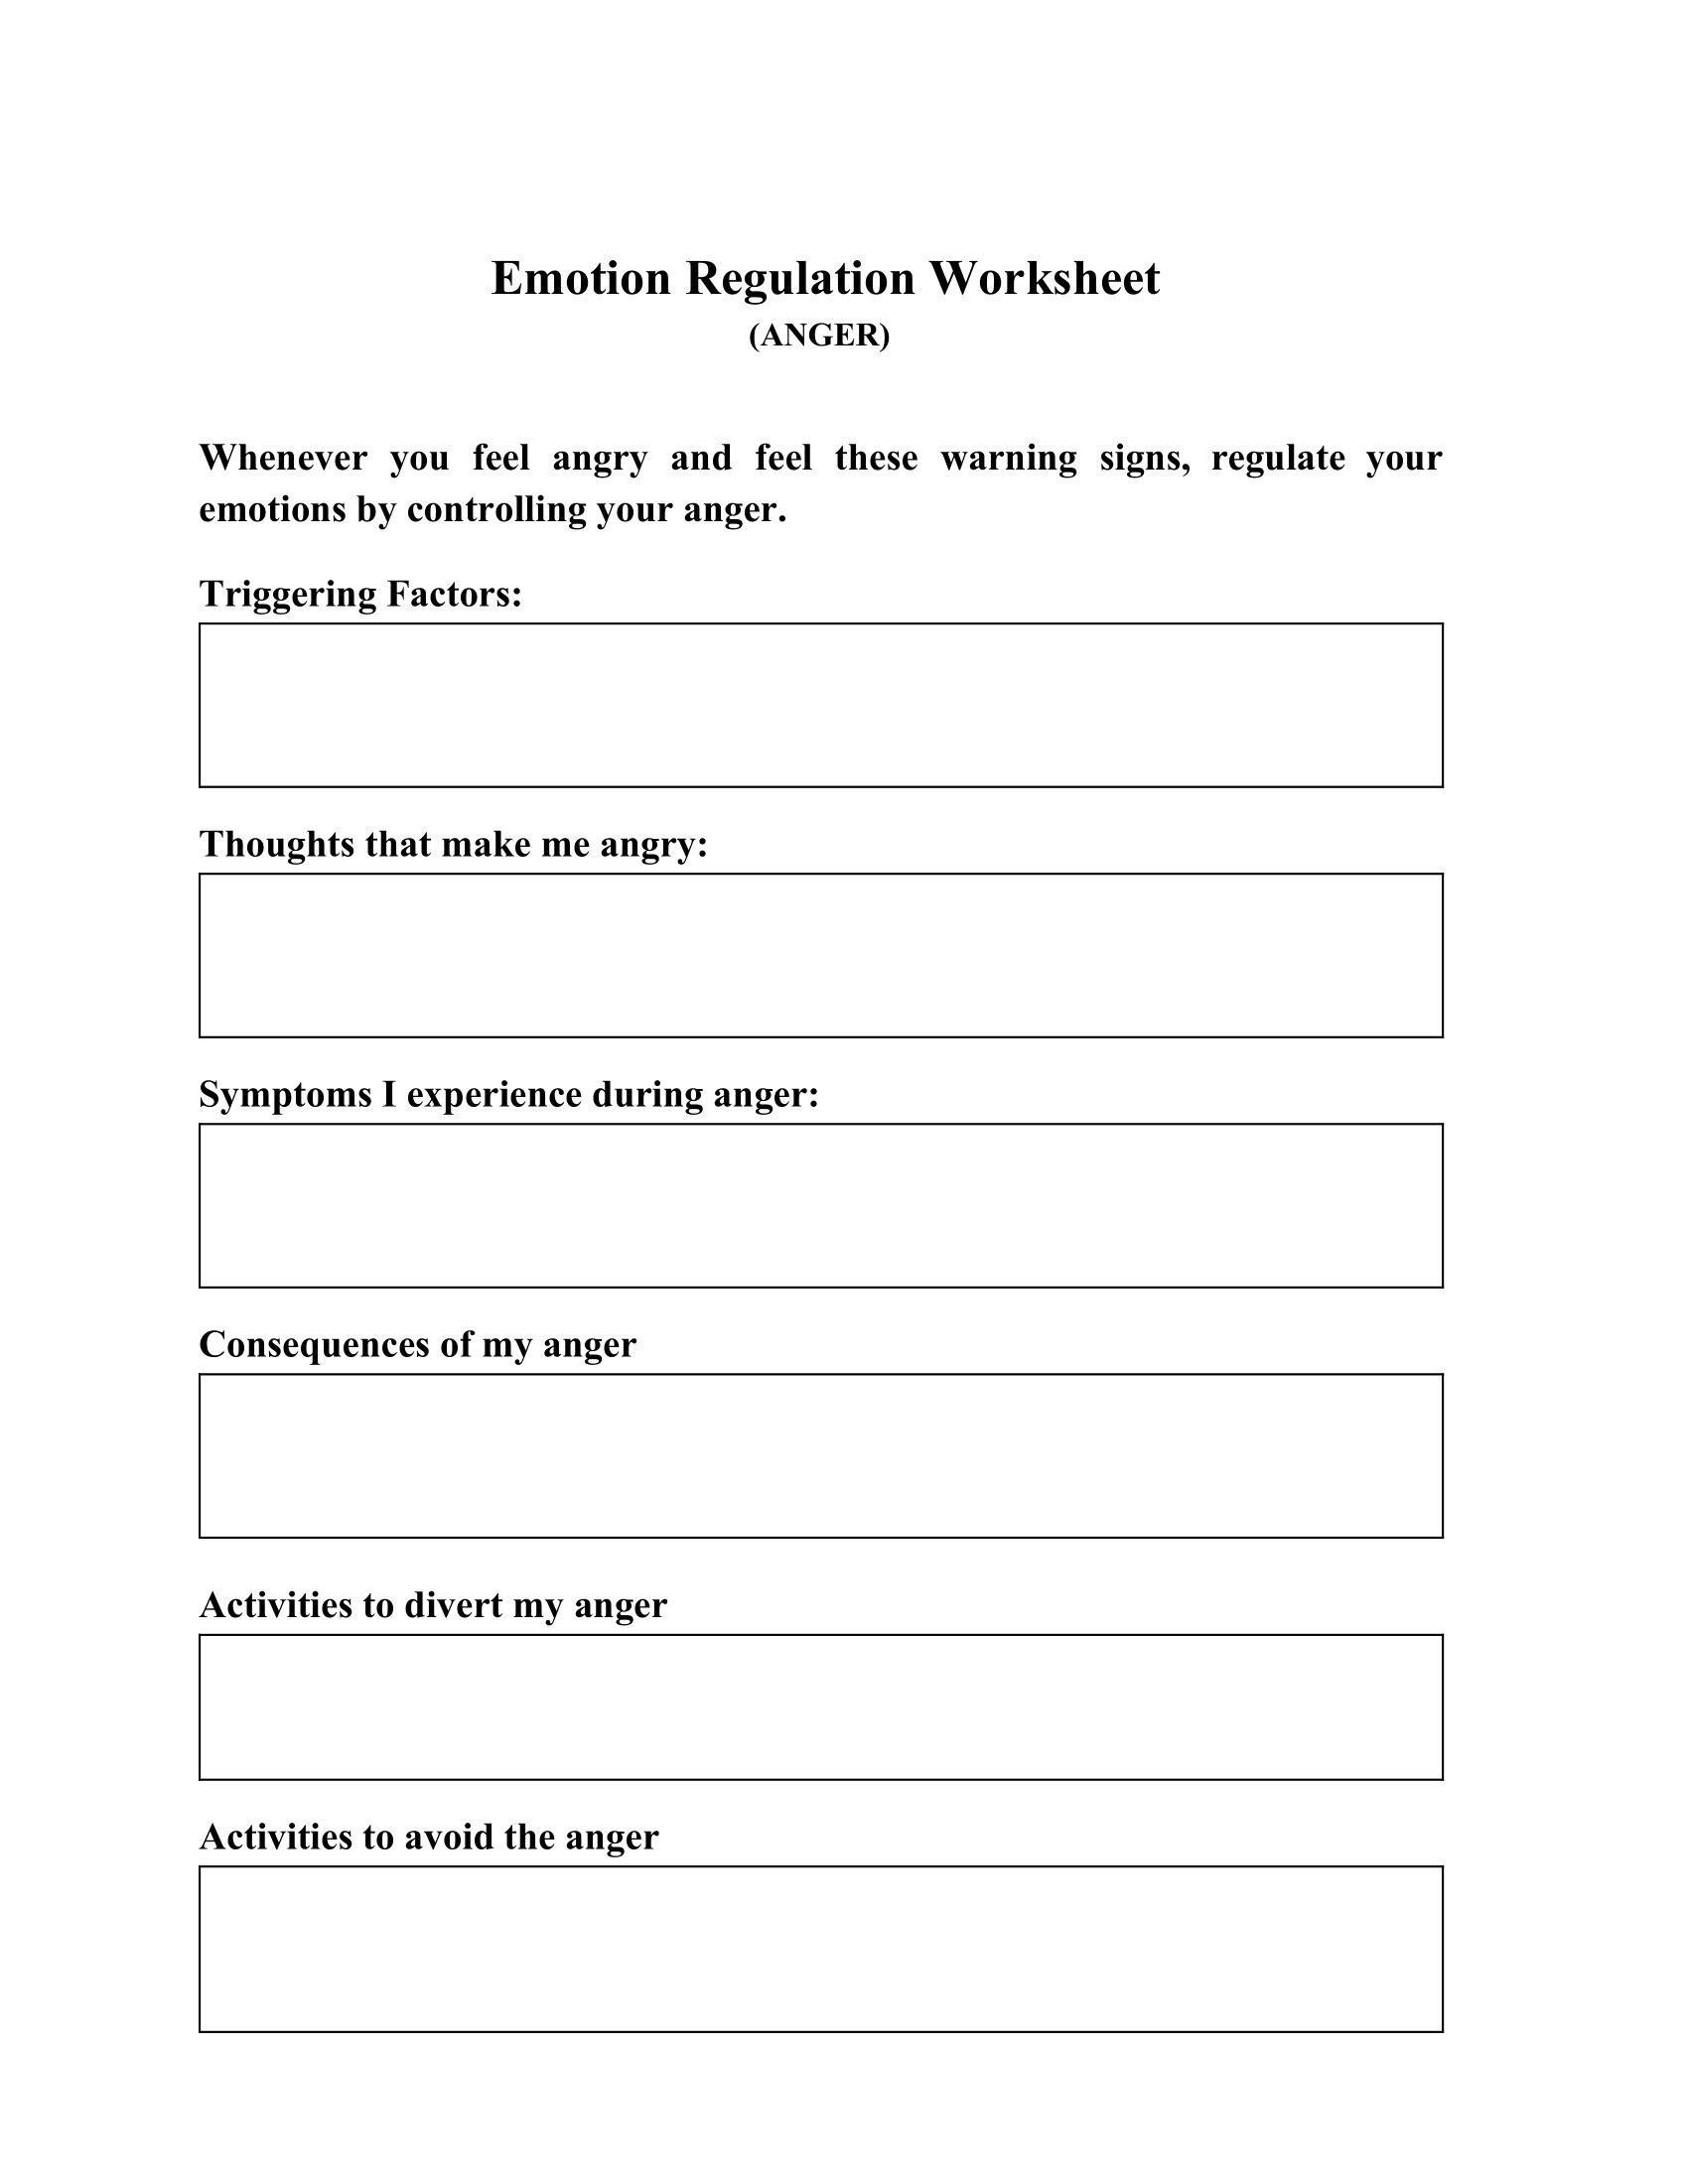 Emotion Regulation Worksheet Mental Health Worksheets